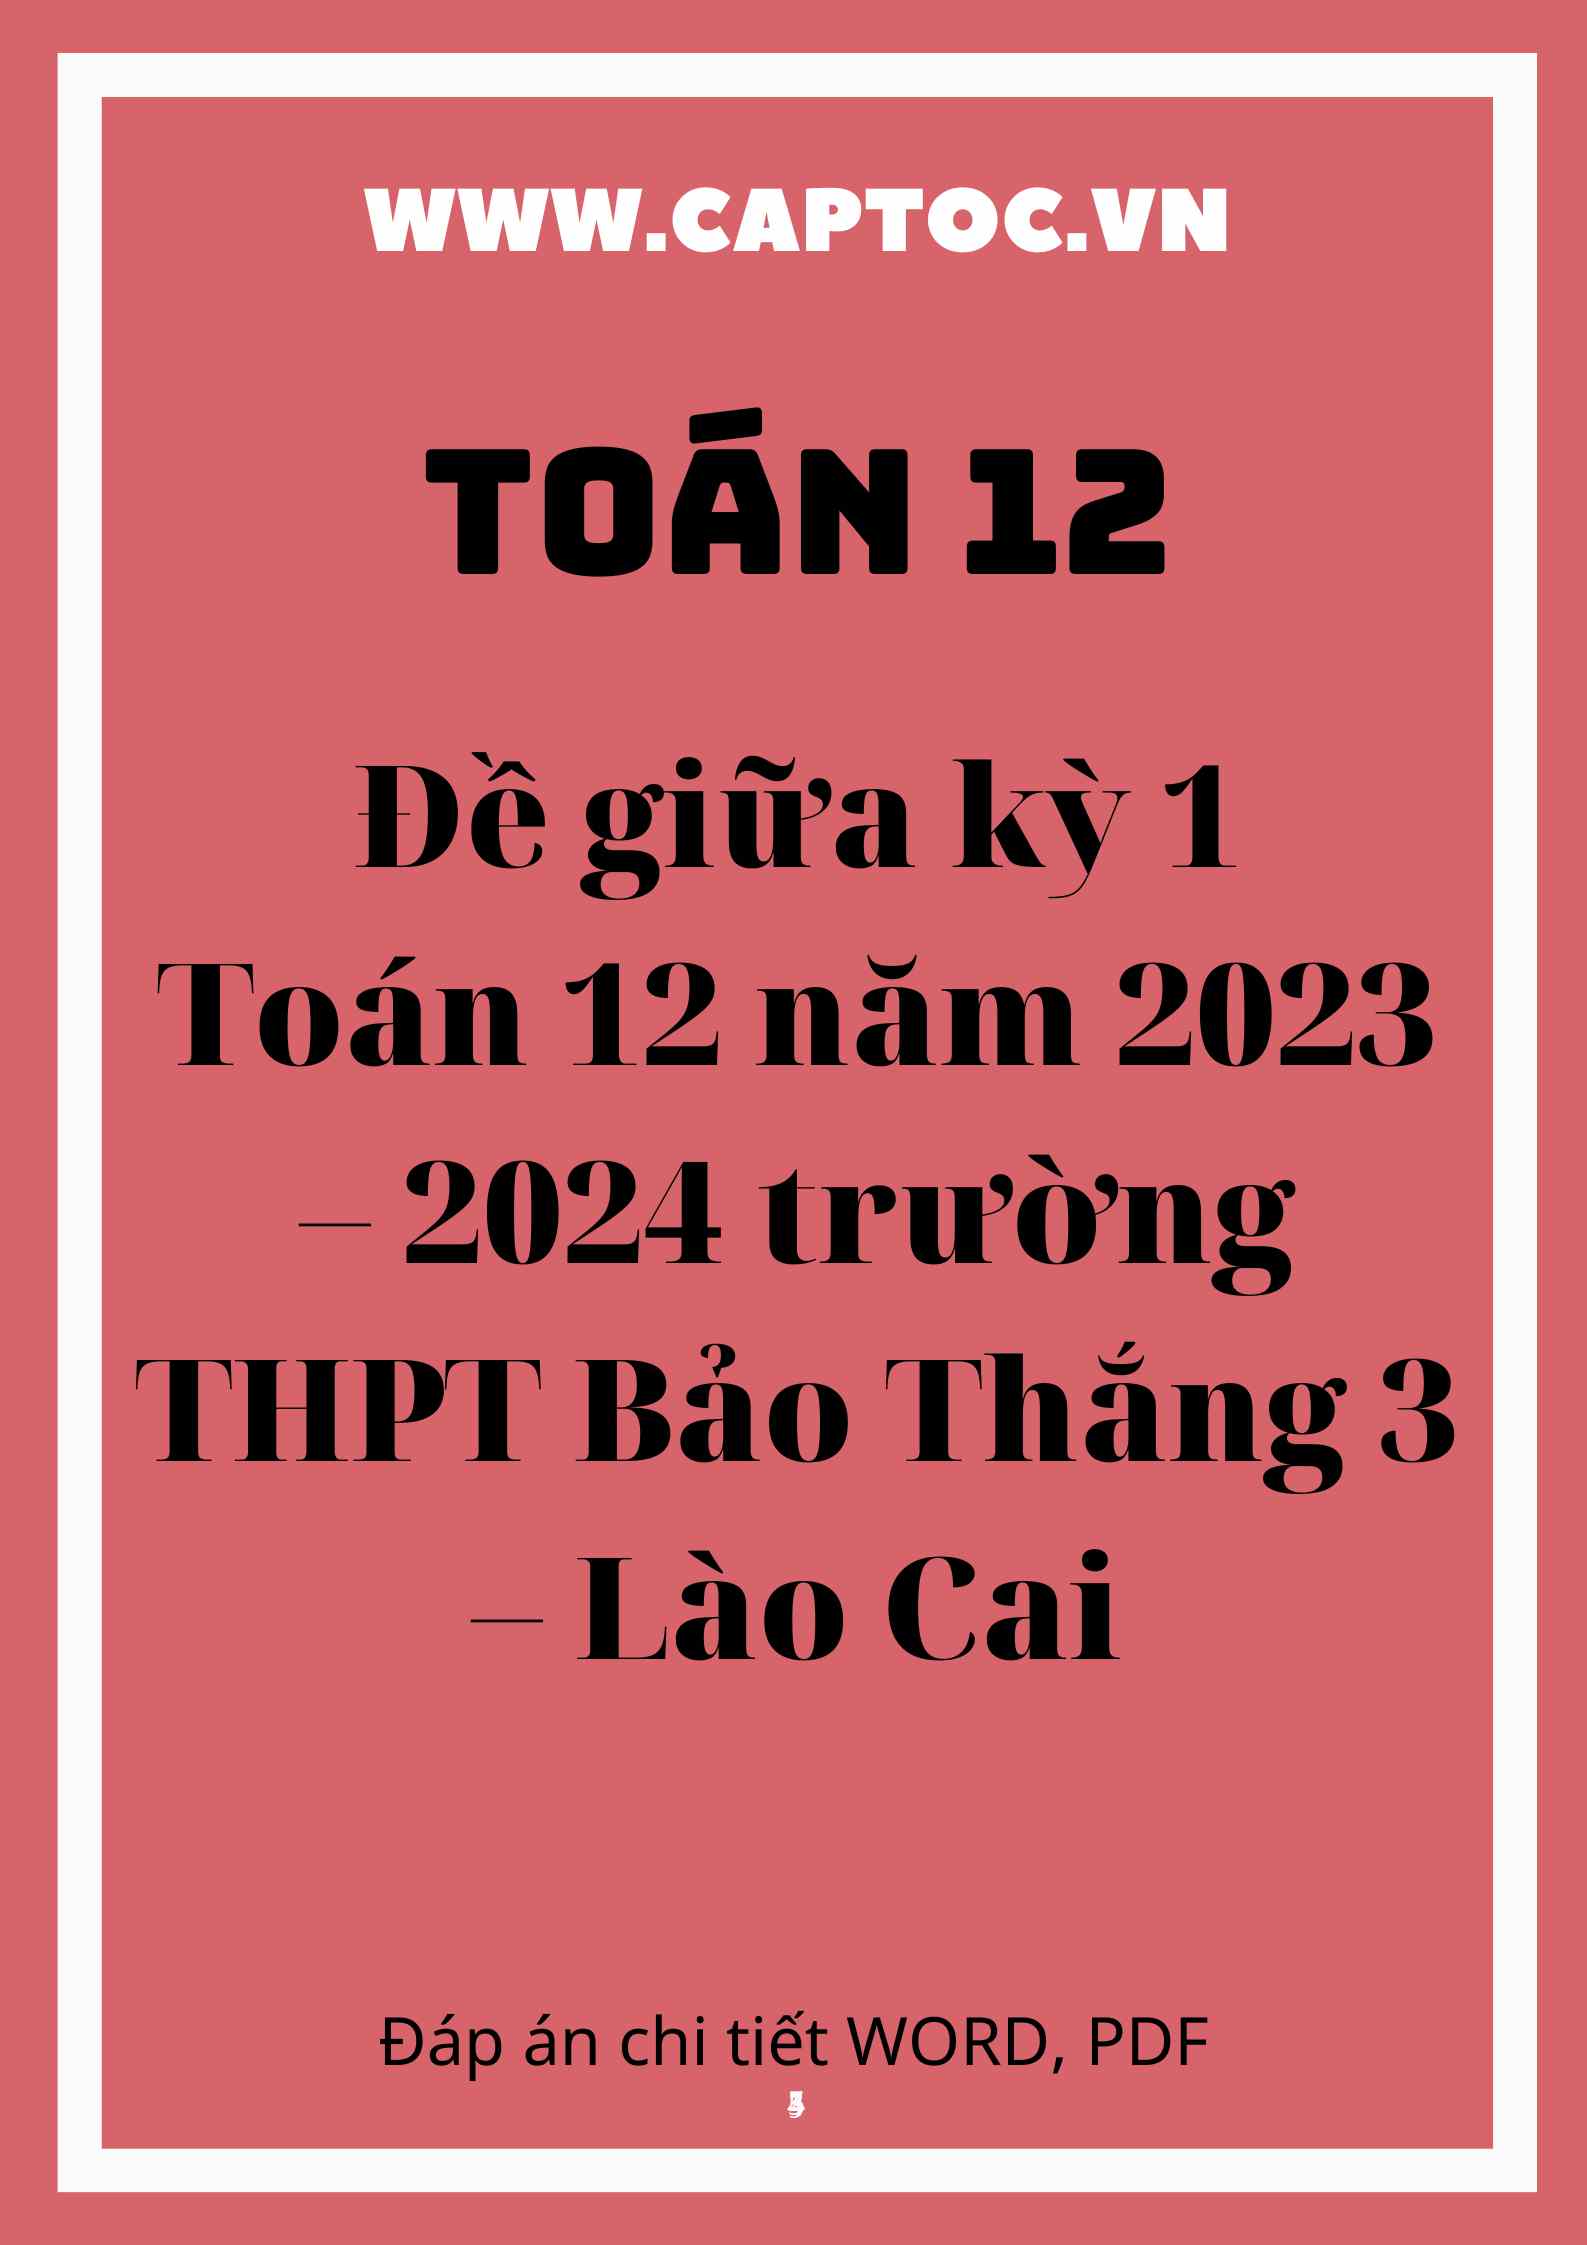 Đề giữa kỳ 1 Toán 12 năm 2023 – 2024 trường THPT Bảo Thắng 3 – Lào Cai